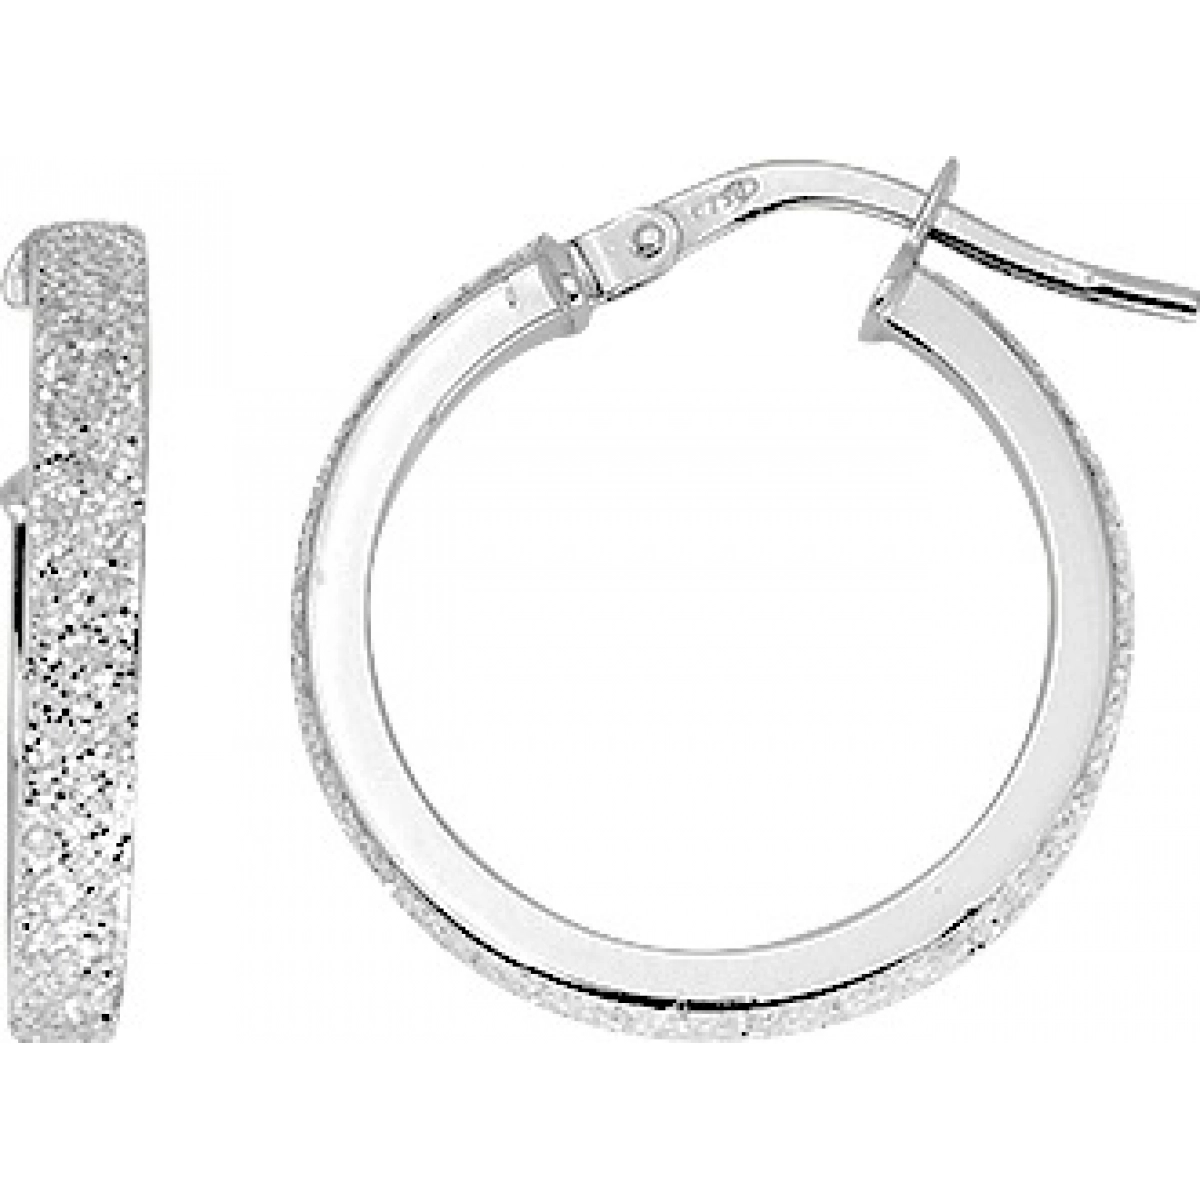 Hoops earrings pair w. glitter 9K WG  Lua Blanca  9K3687GR.0